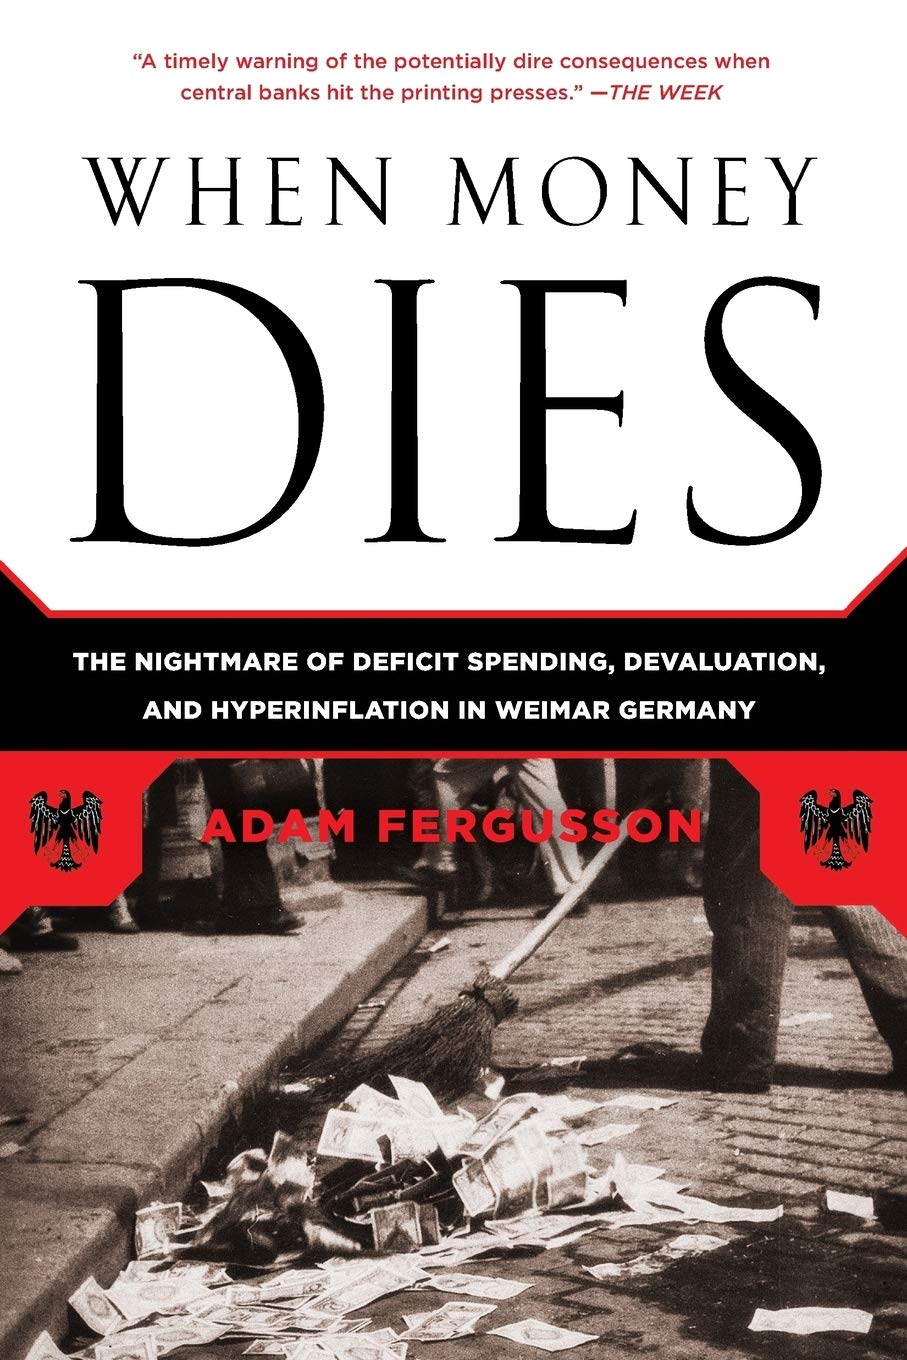 When Money Dies by Adam Fergusson​